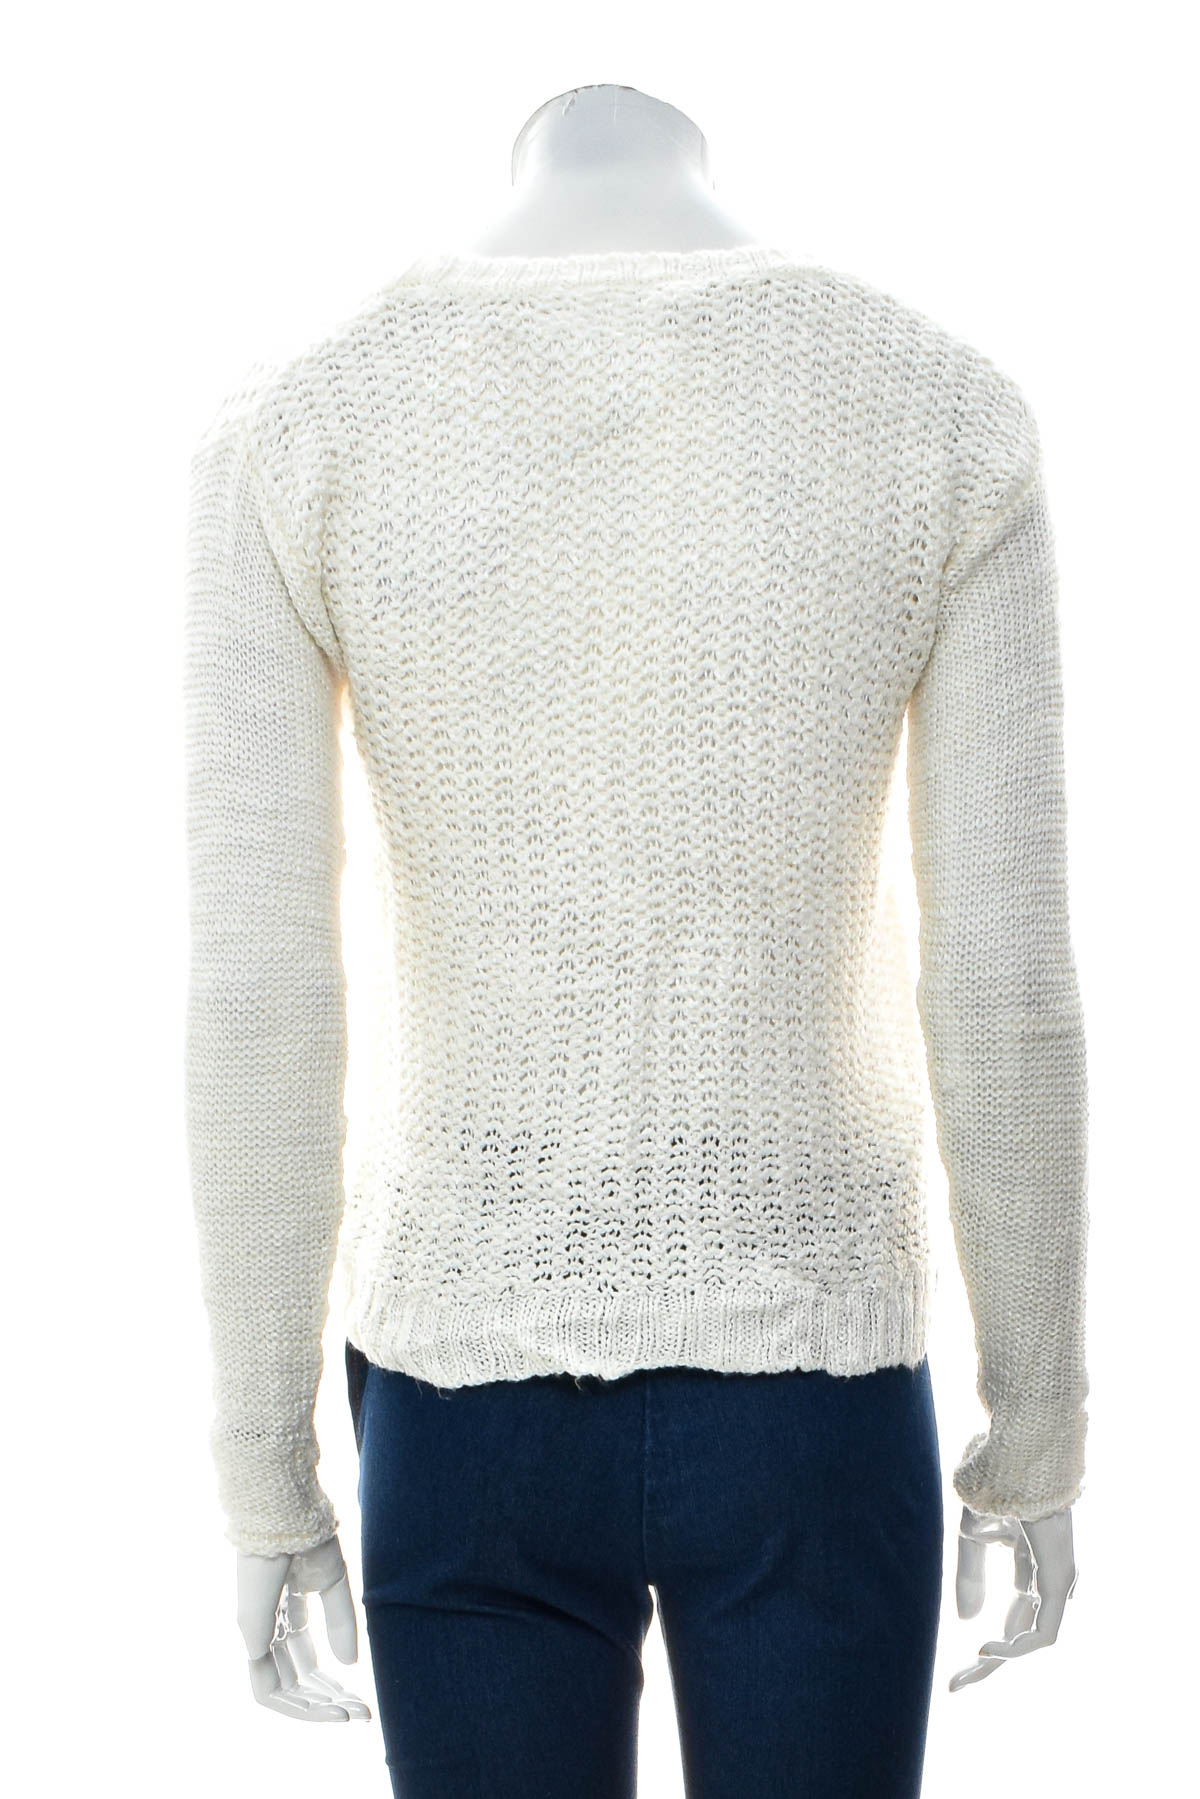 Women's sweater - AEROPOSTALE - 1